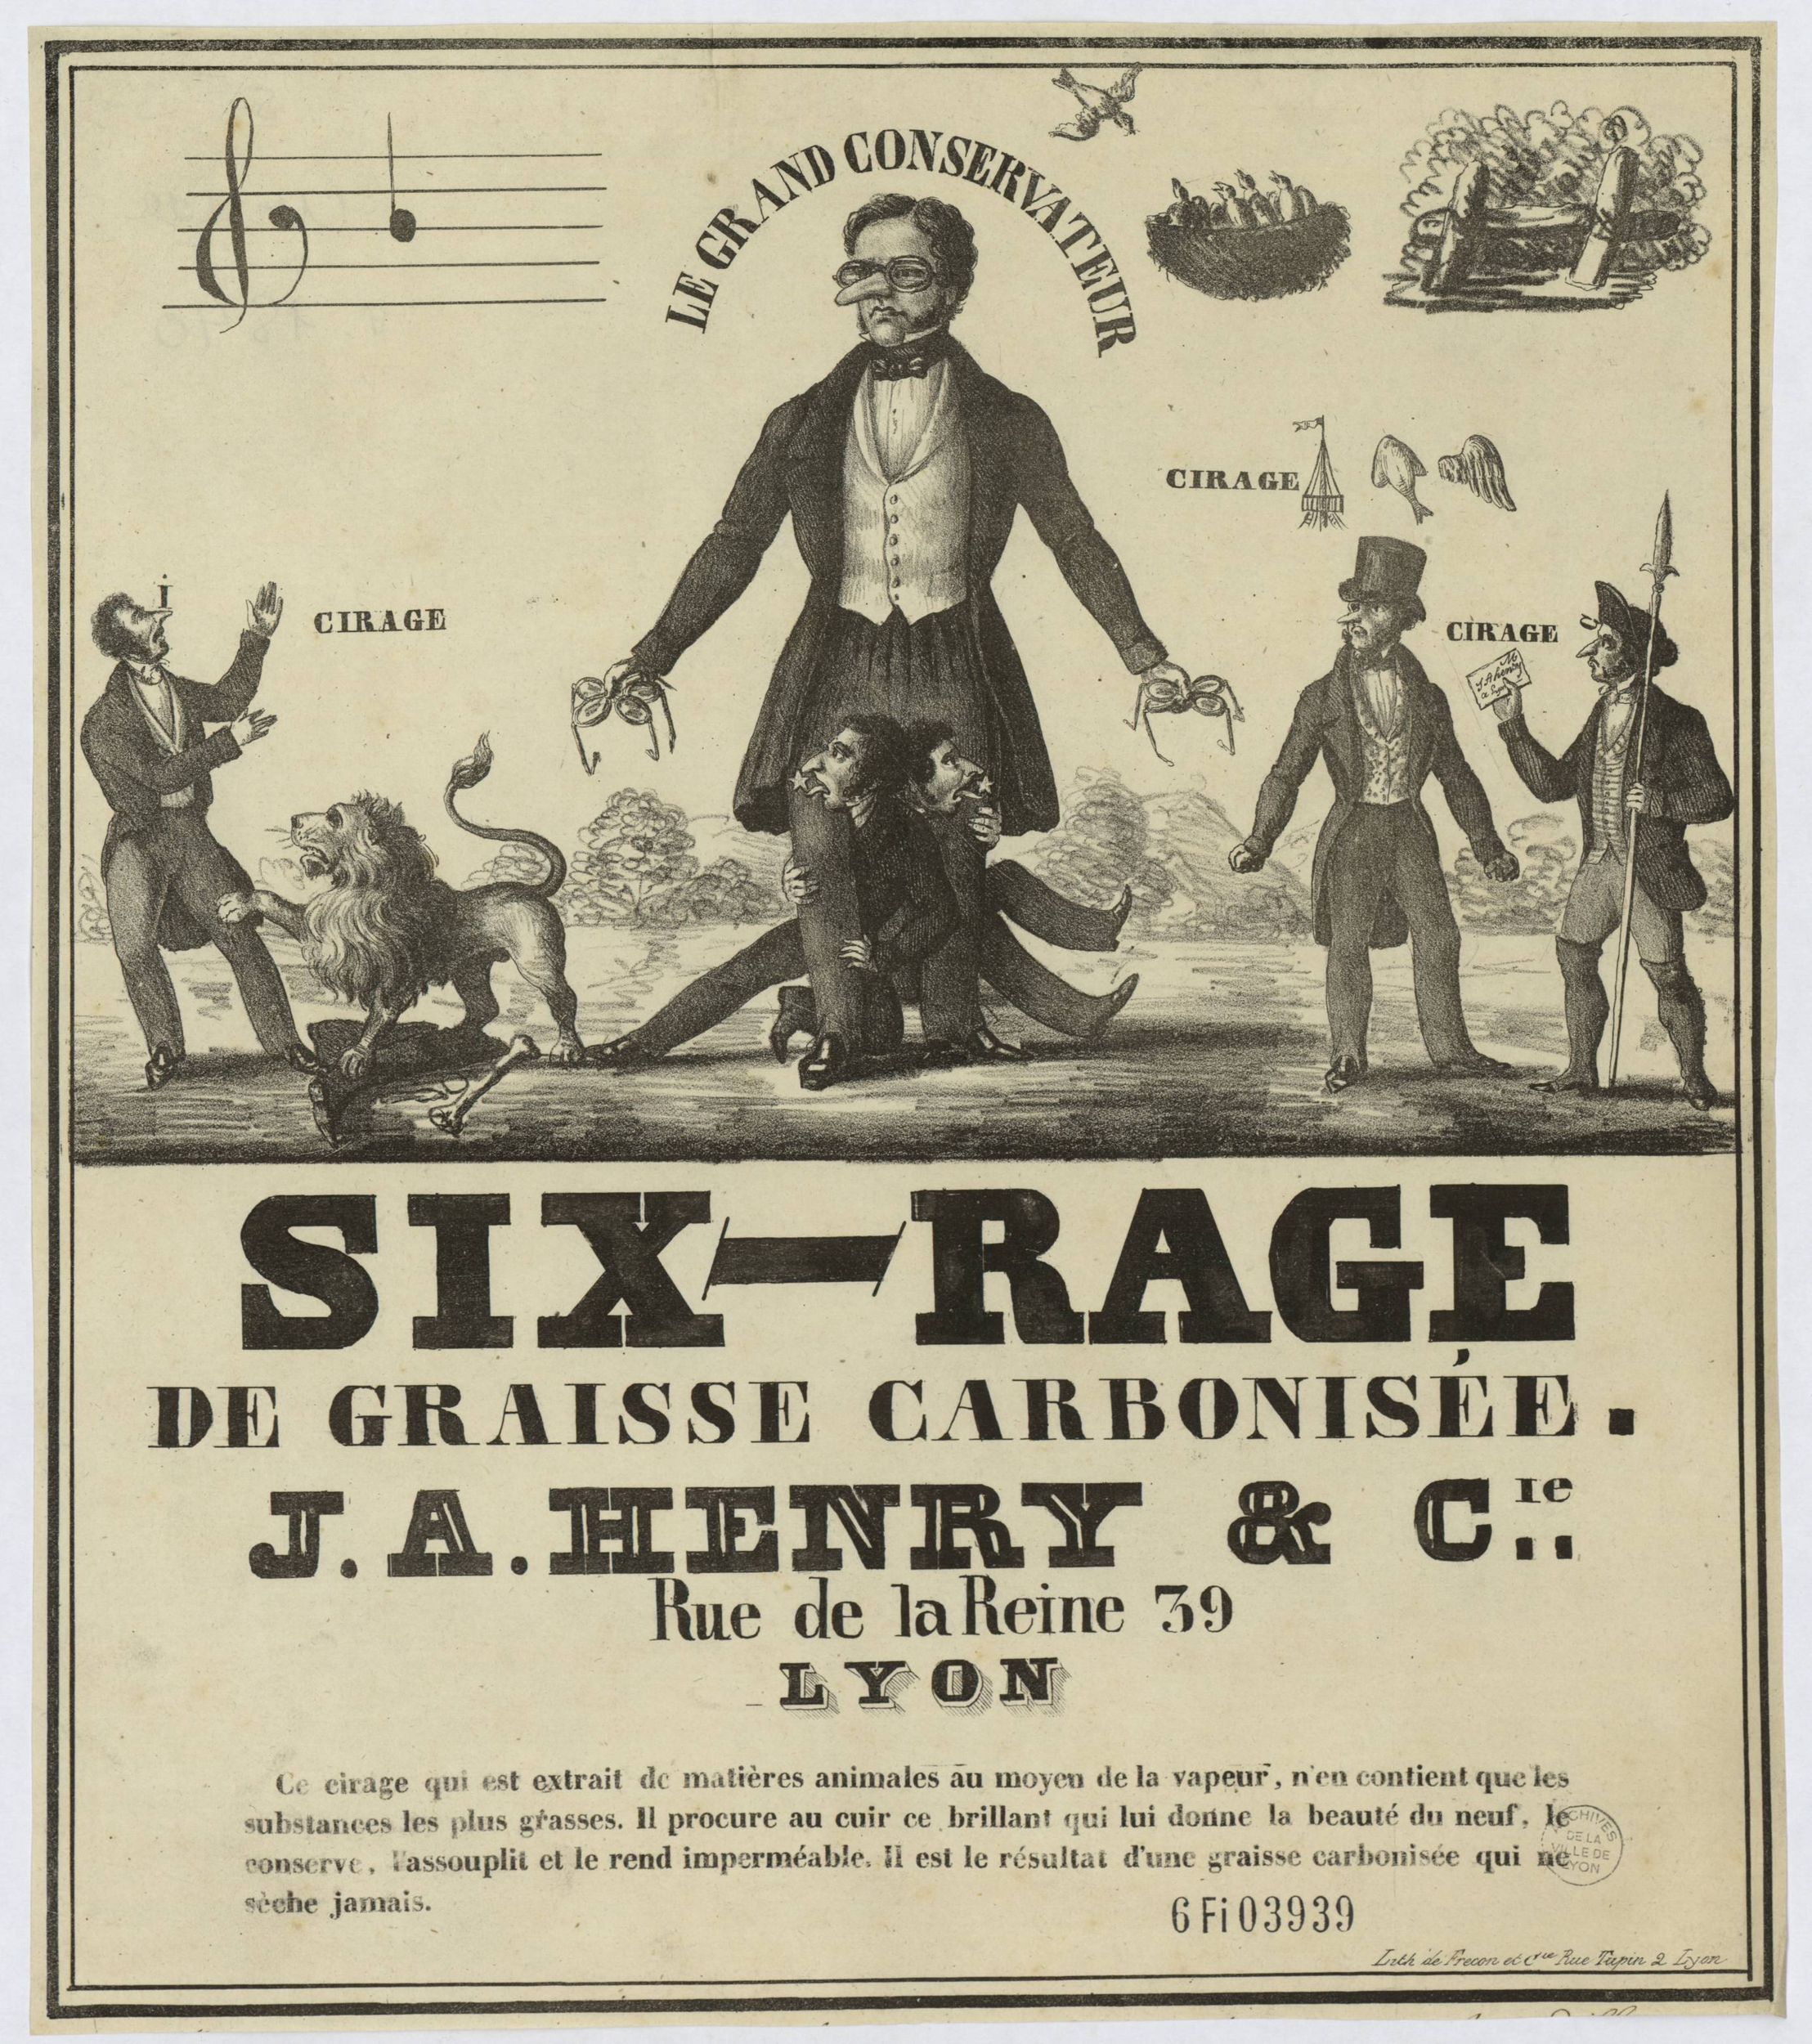 Cirage Six-Rage de graisse carbonisée - J.A. Henry & Cie : affiche publicitaire NB (1840, cote : 6FI/3939)